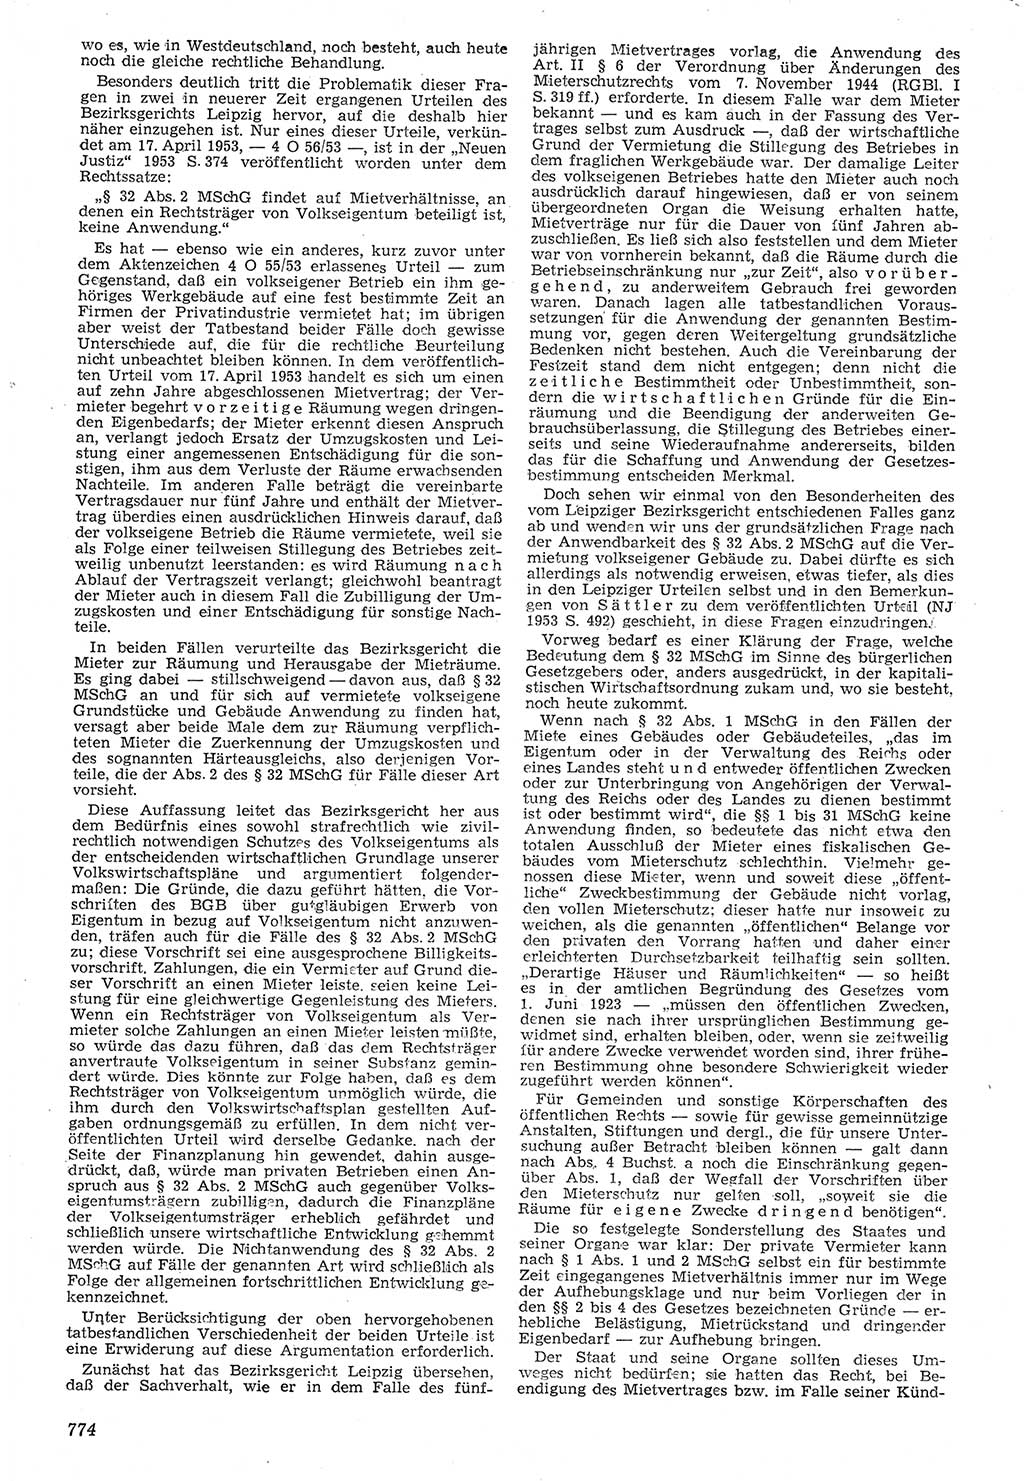 Neue Justiz (NJ), Zeitschrift für Recht und Rechtswissenschaft [Deutsche Demokratische Republik (DDR)], 7. Jahrgang 1953, Seite 774 (NJ DDR 1953, S. 774)